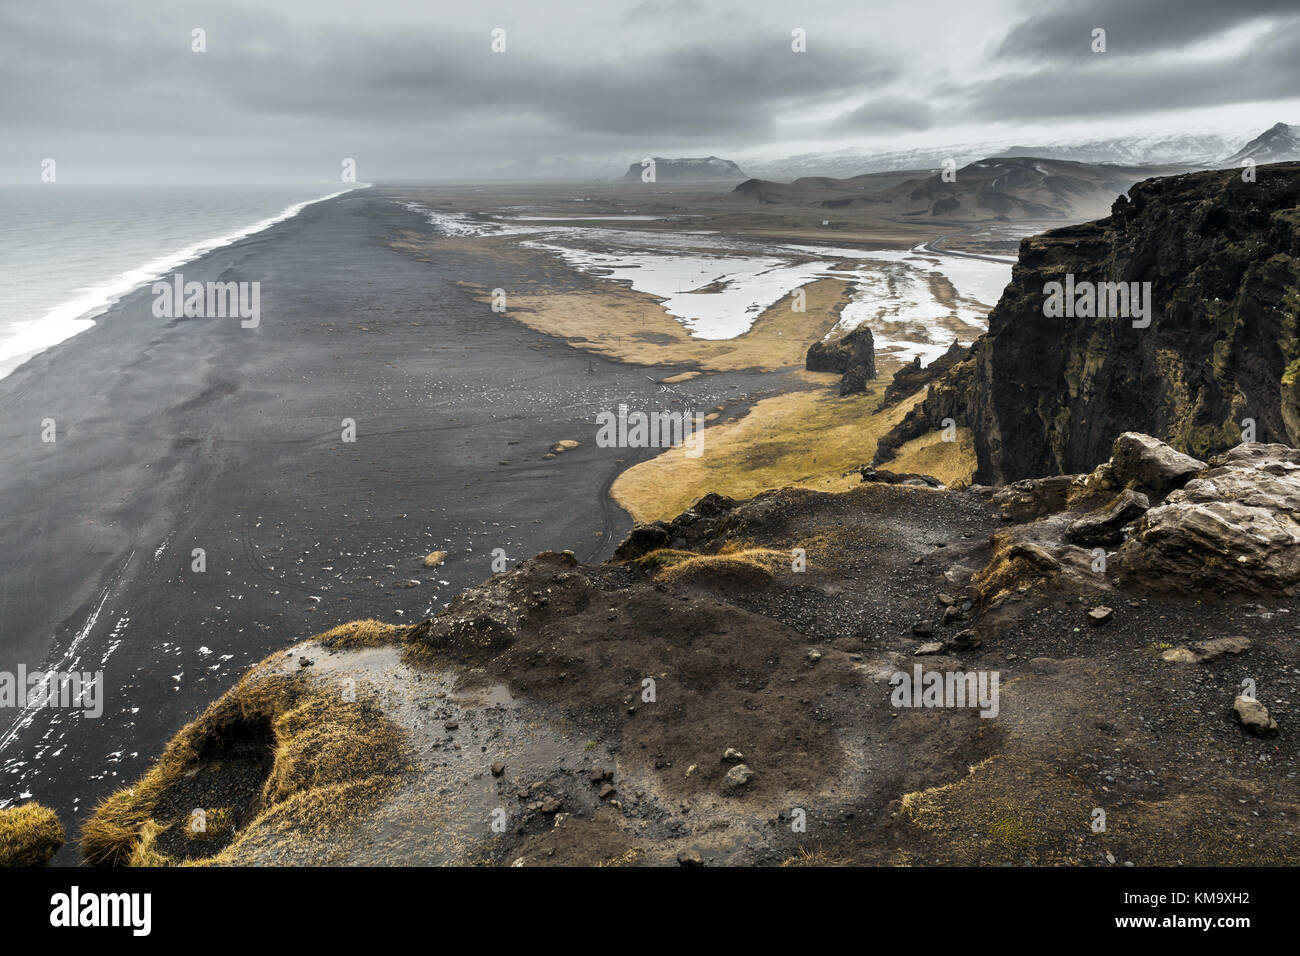 Paysage côtier. islandaise océan Atlantique Nord littoral, plage de sable noir de vik, district, Islande Banque D'Images